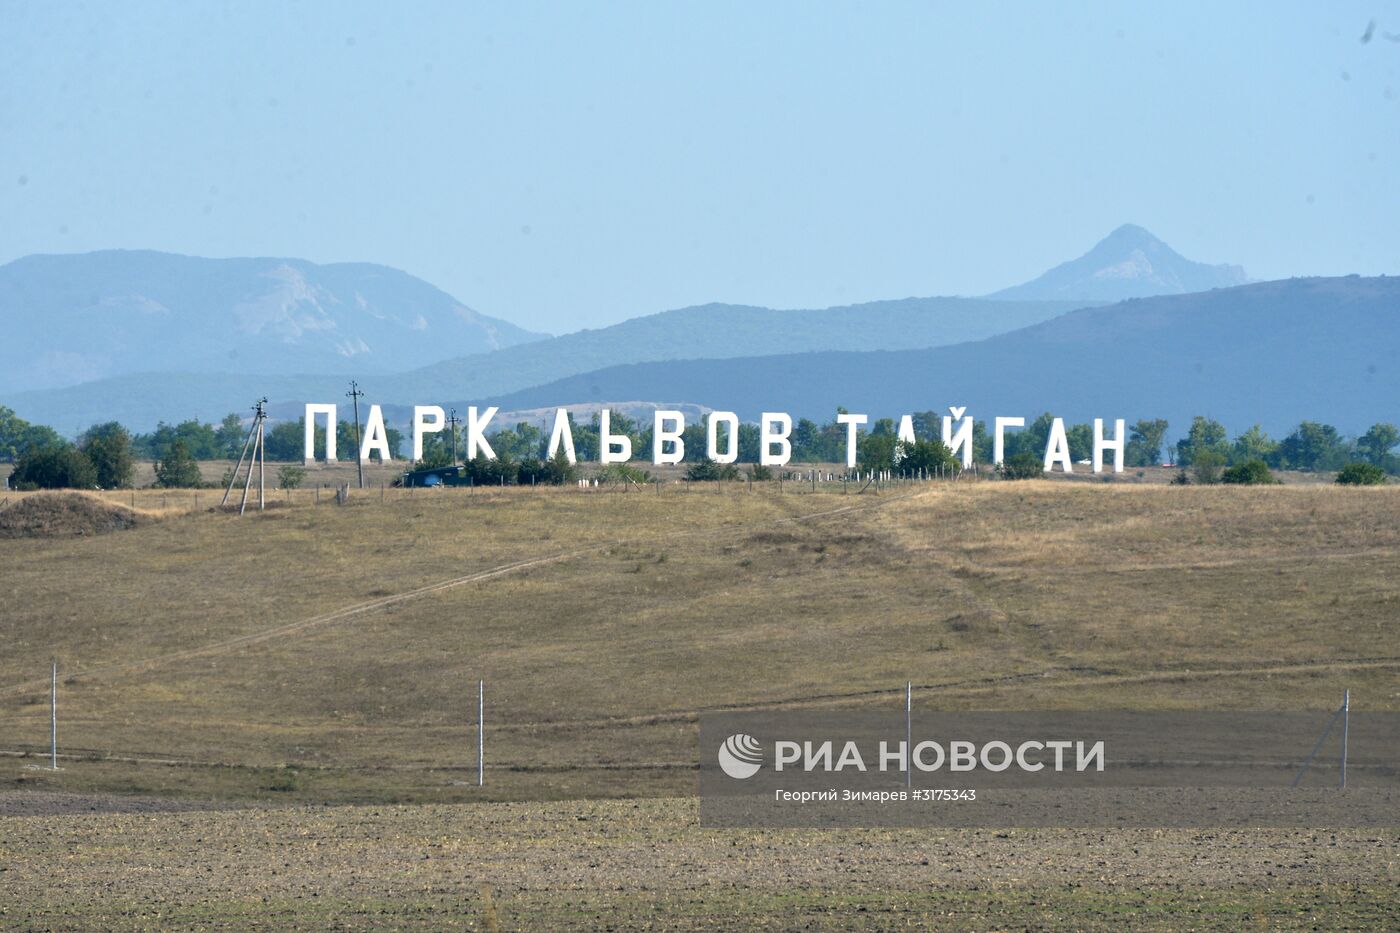 Сафари-парк "Тайган" в Крыму